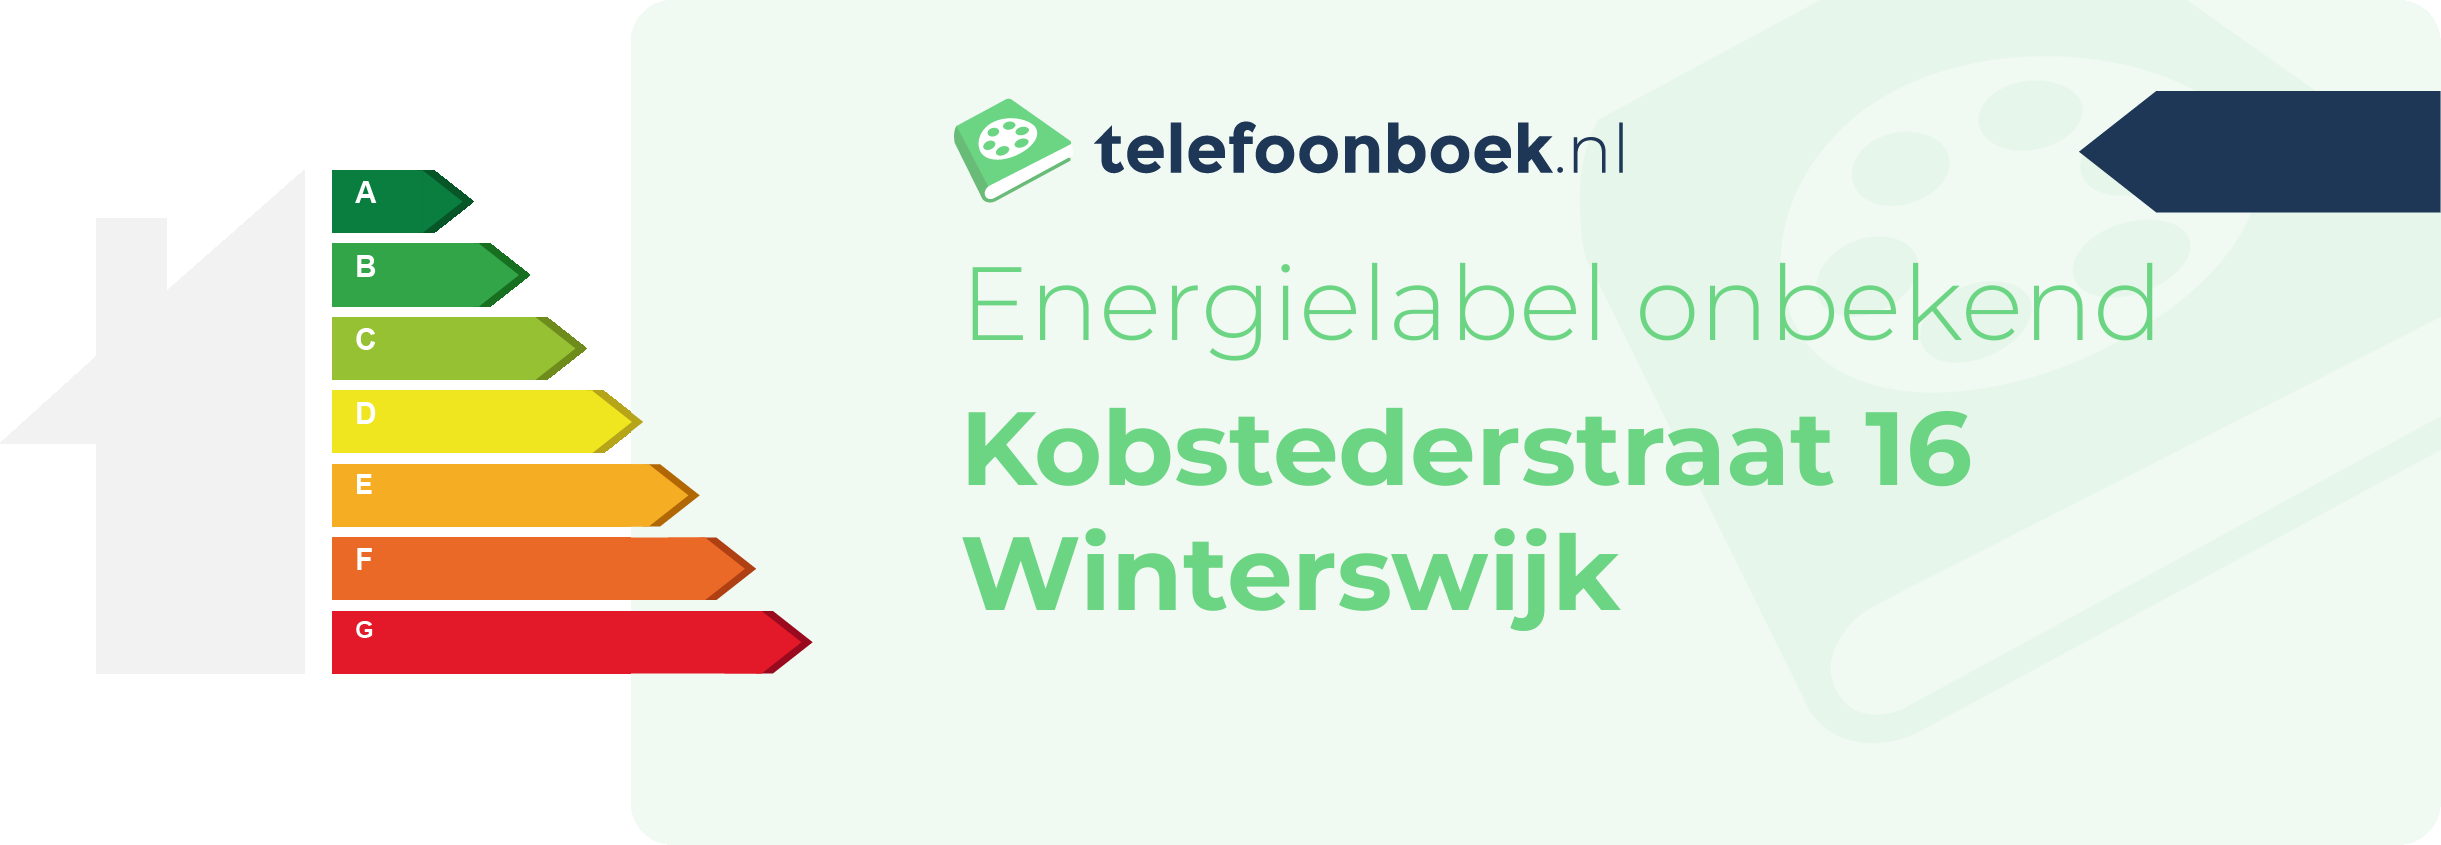 Energielabel Kobstederstraat 16 Winterswijk